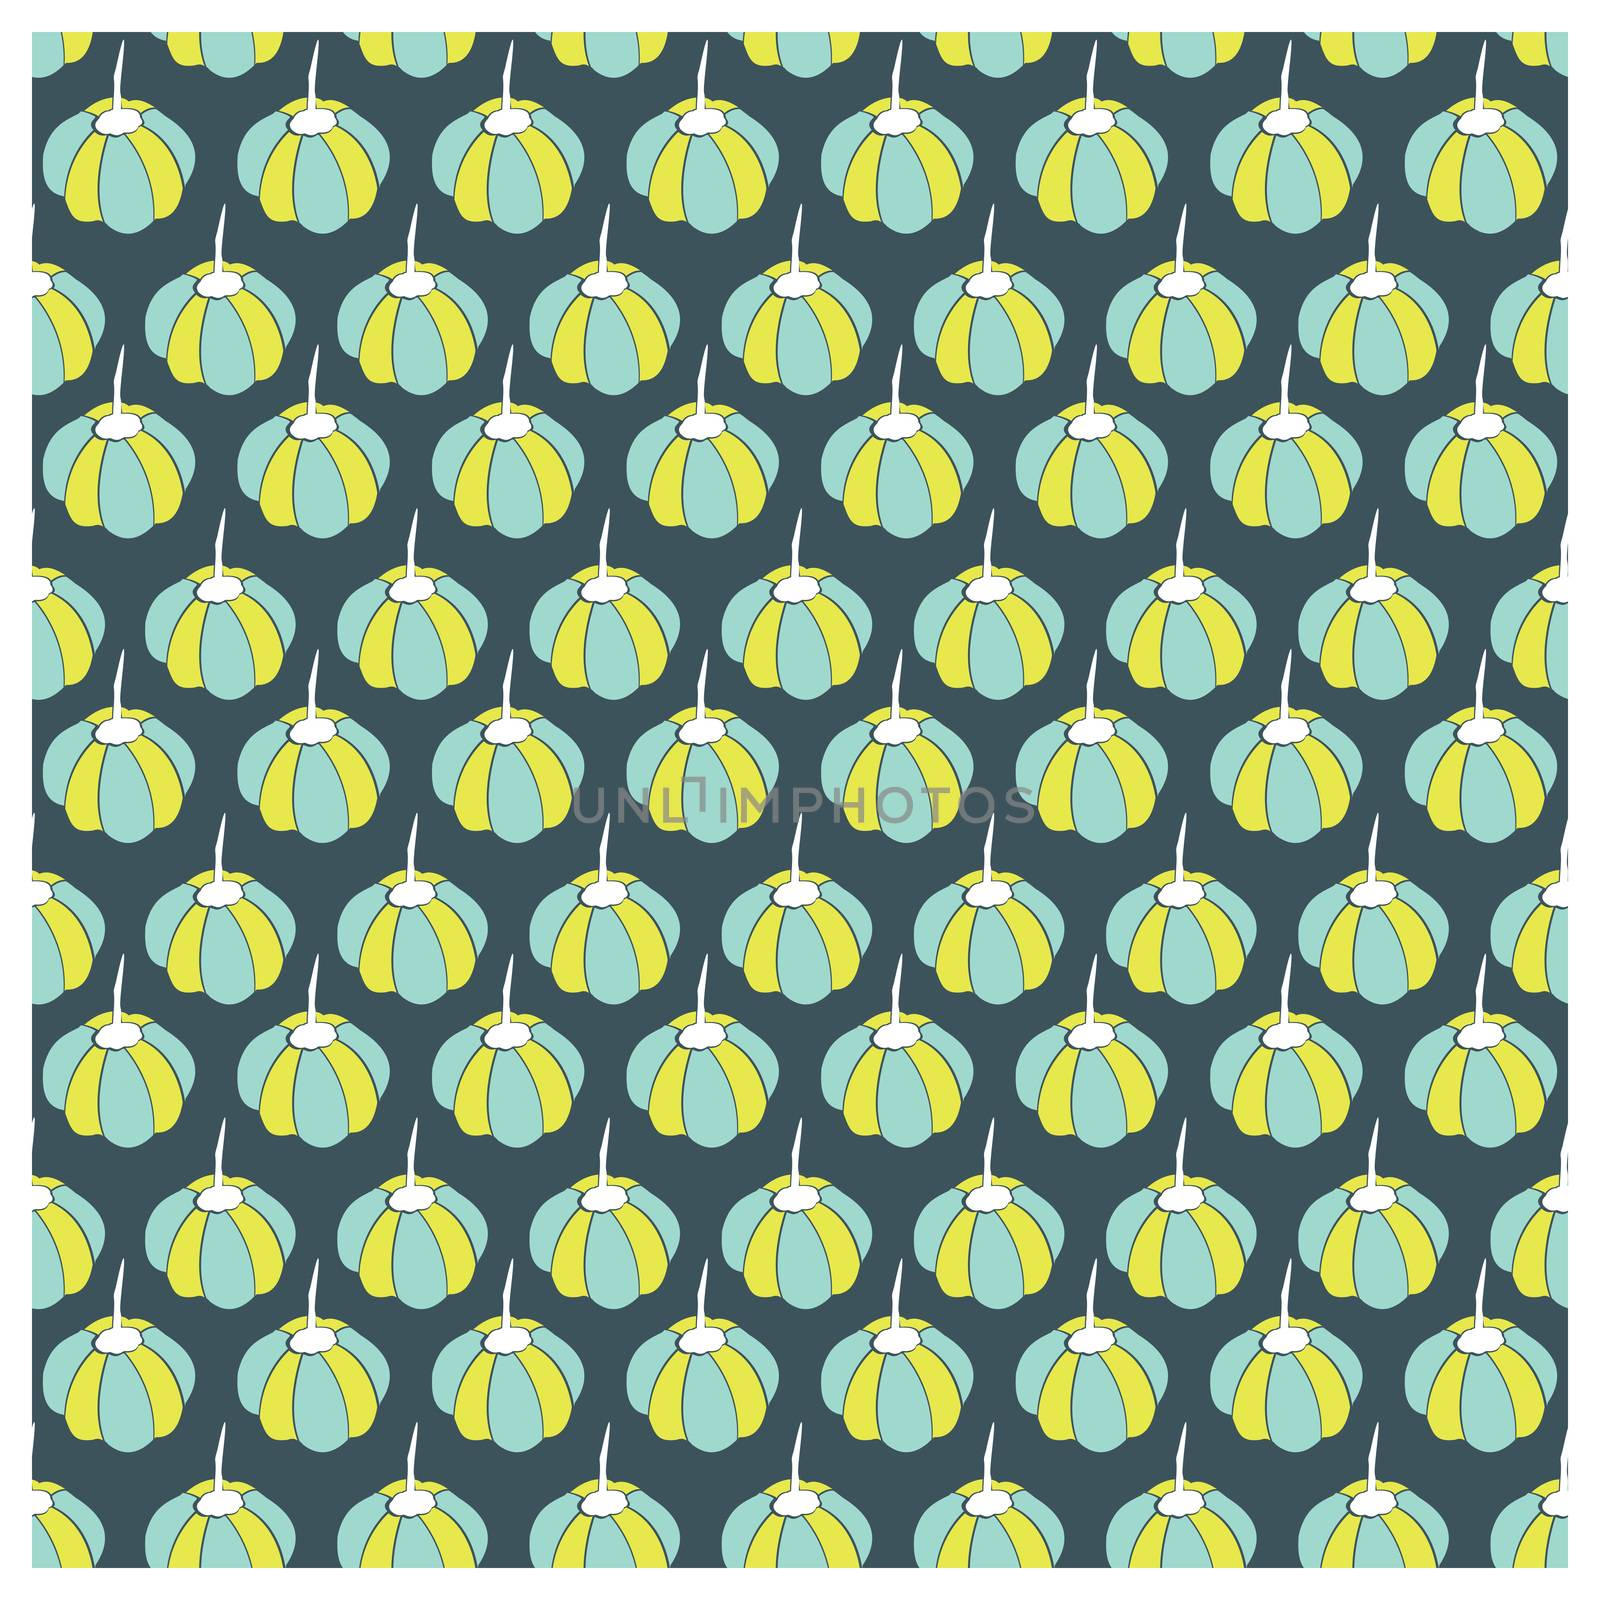 Seamless pattern by Crownaart